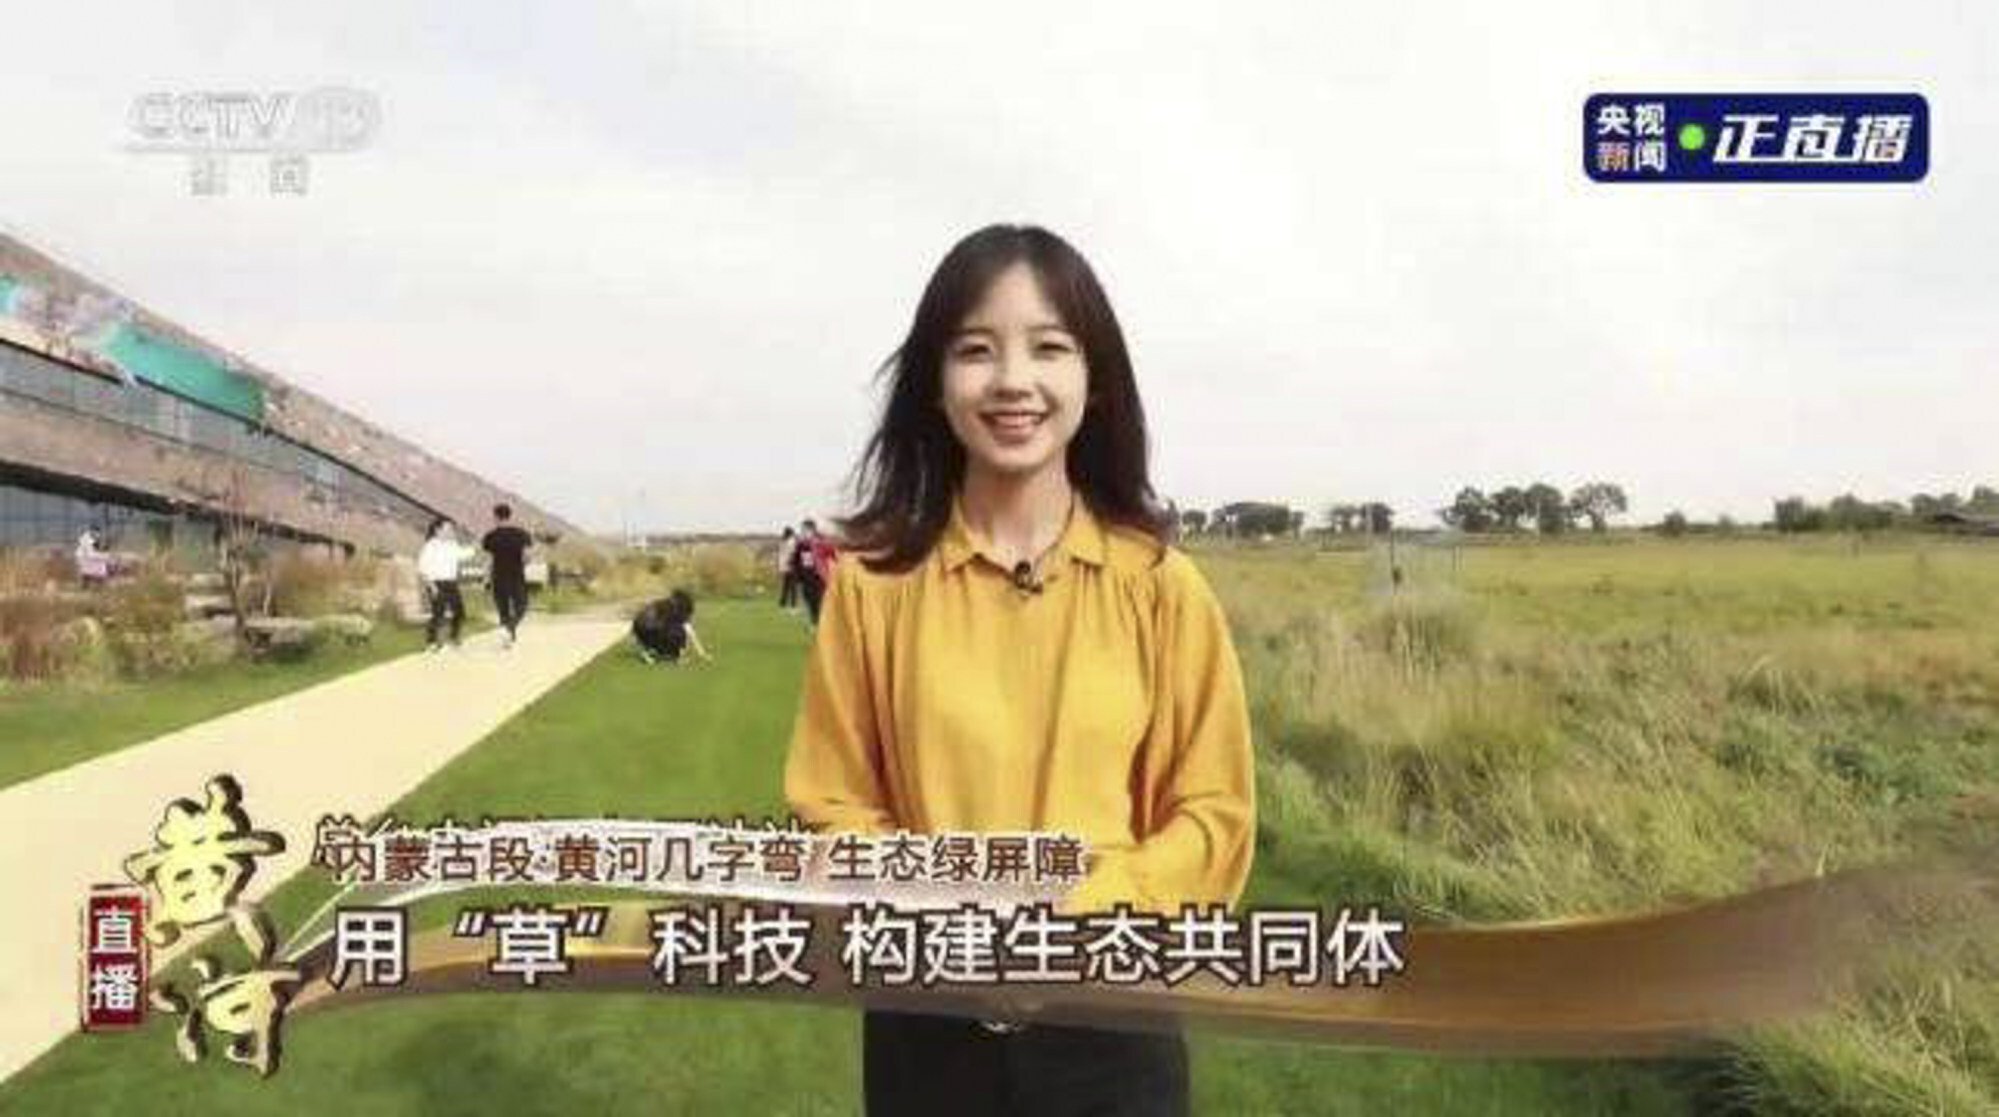 Wang trở thành biểu tượng quốc gia vào năm 2020 sau khi một video clip về việc cô đưa tin về cỏ ...